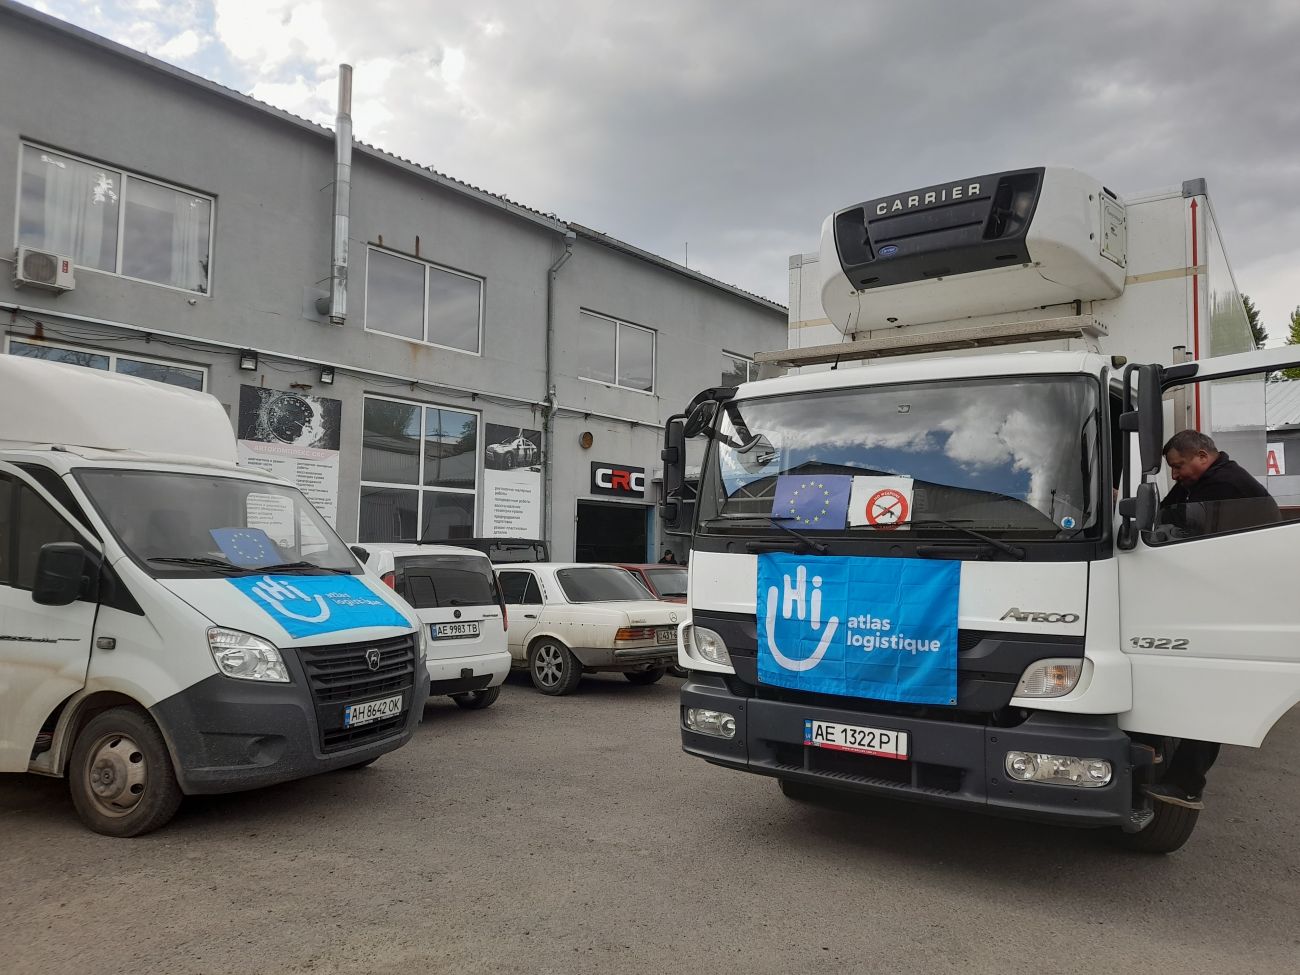 HI logistics transport trucks in Ukraine. © HI